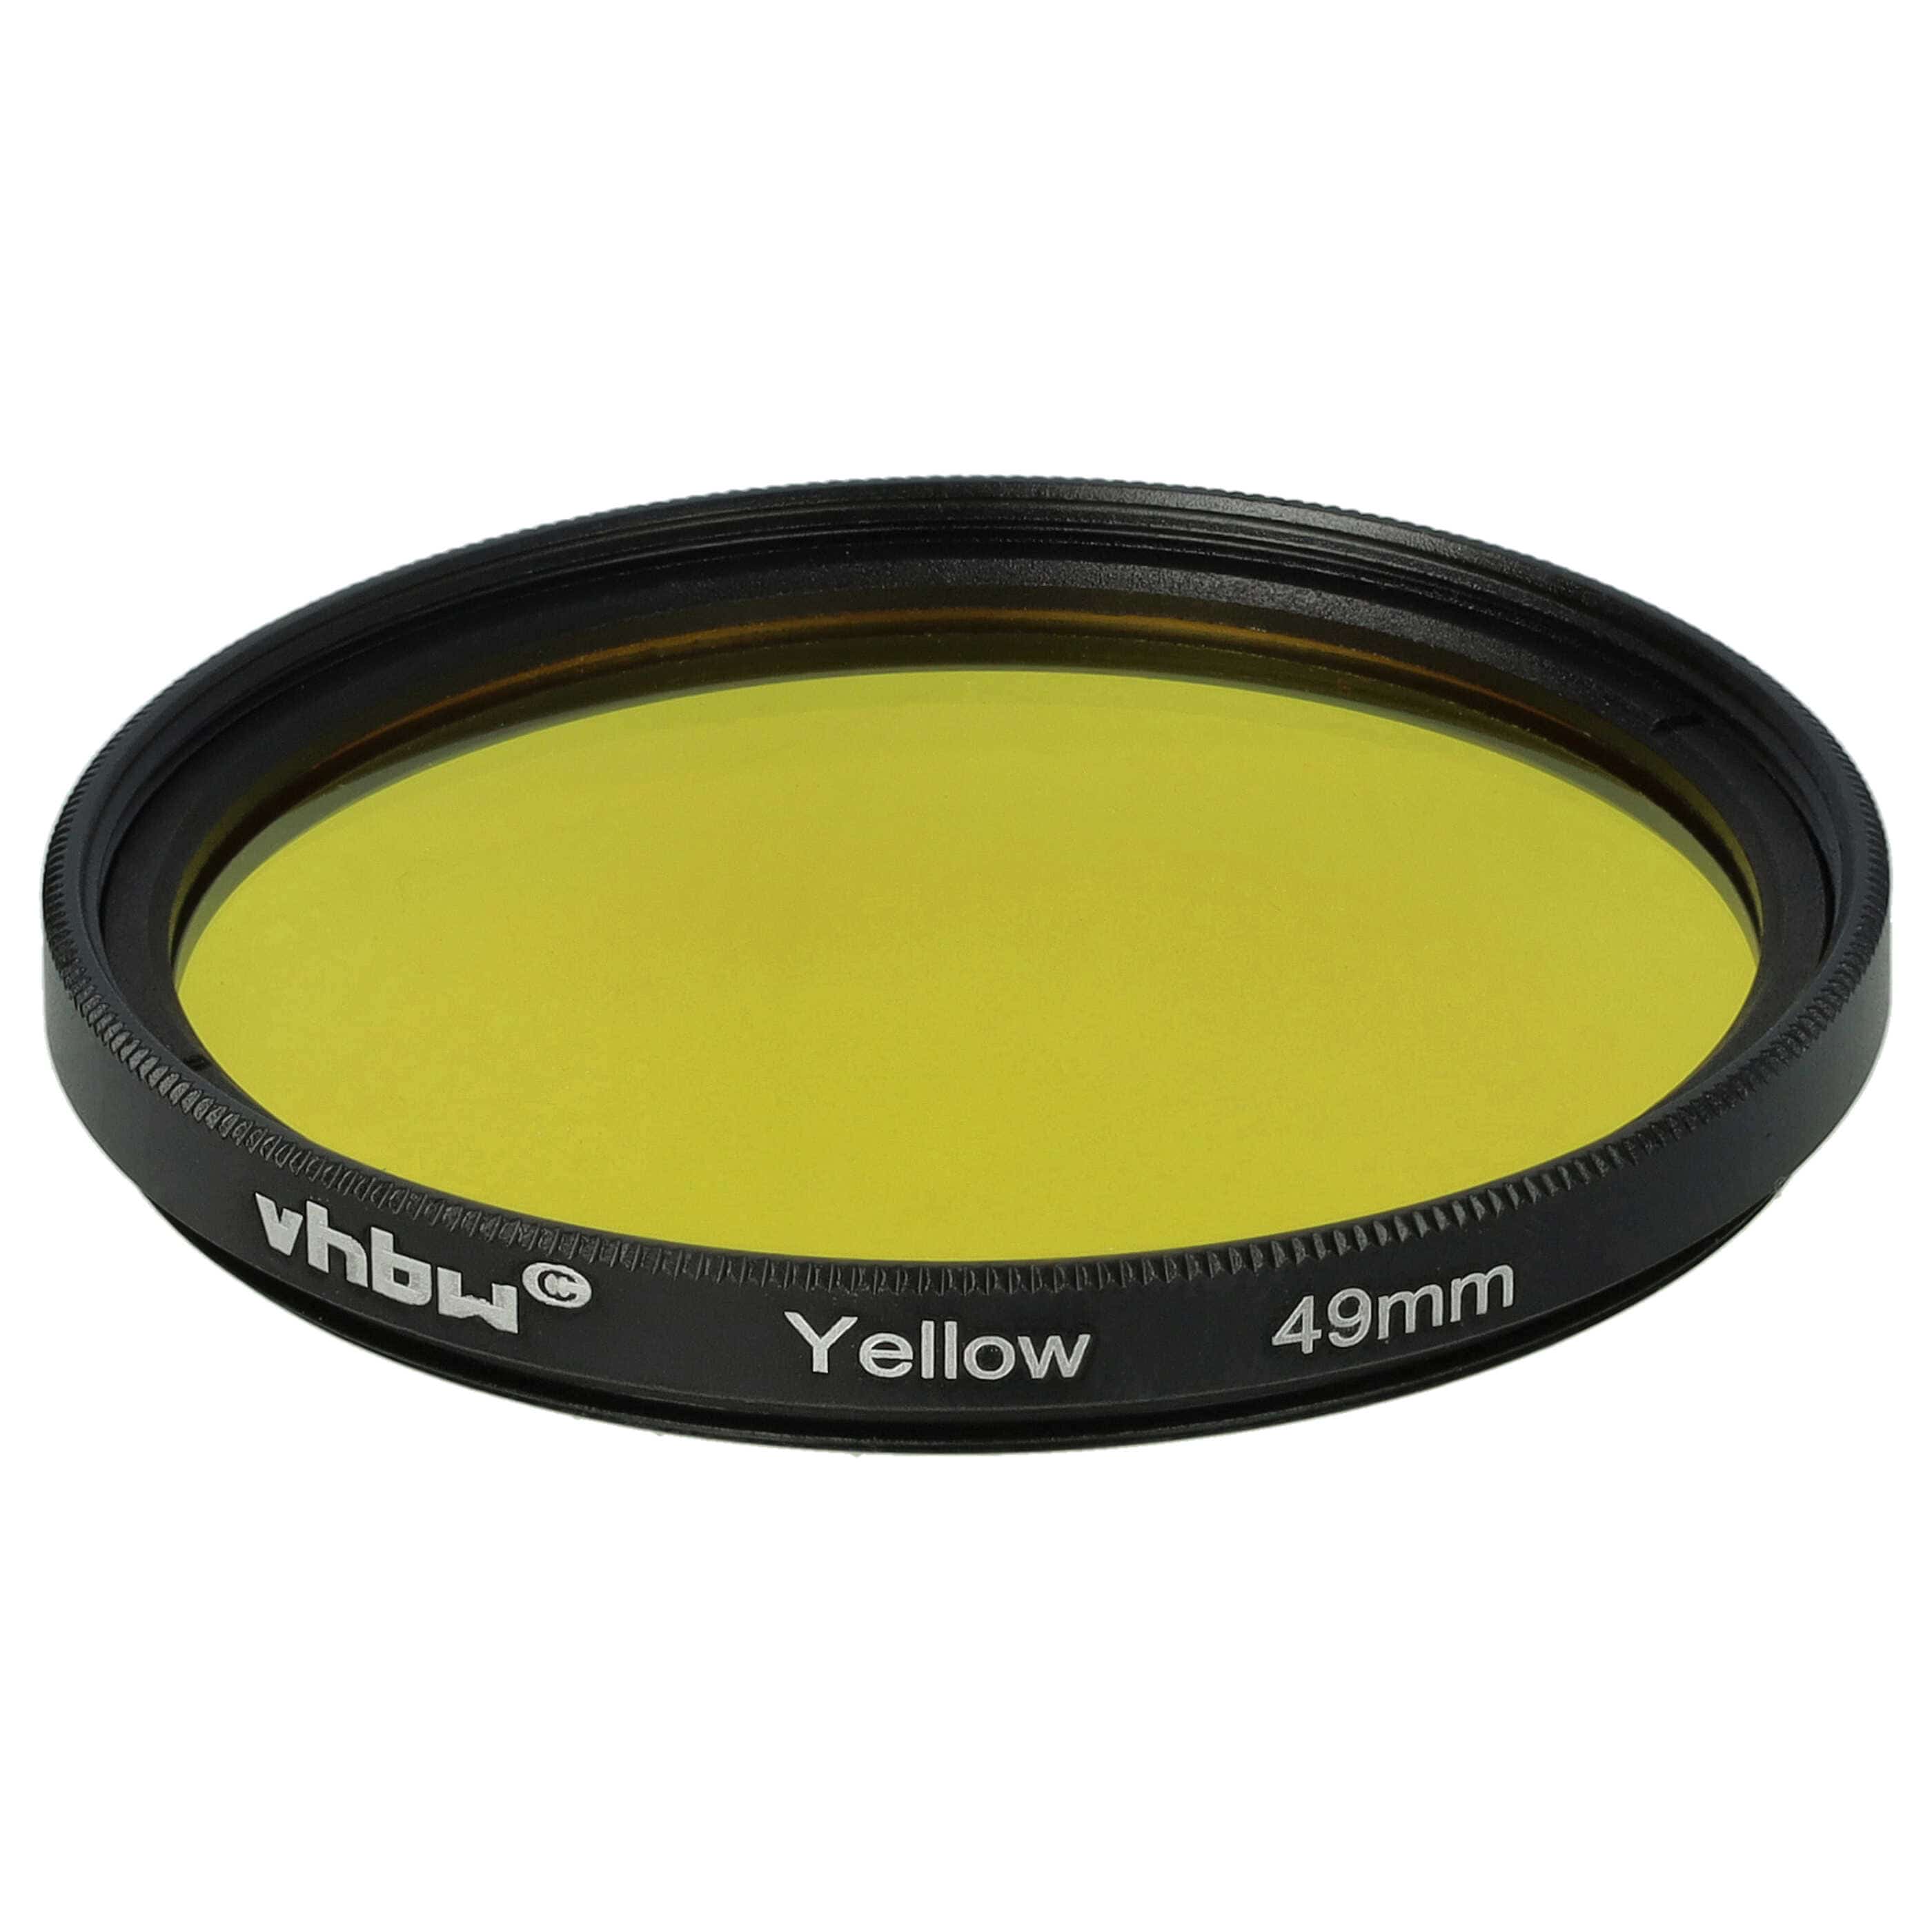 Farbfilter gelb passend für Kamera Objektive mit 49 mm Filtergewinde - Gelbfilter